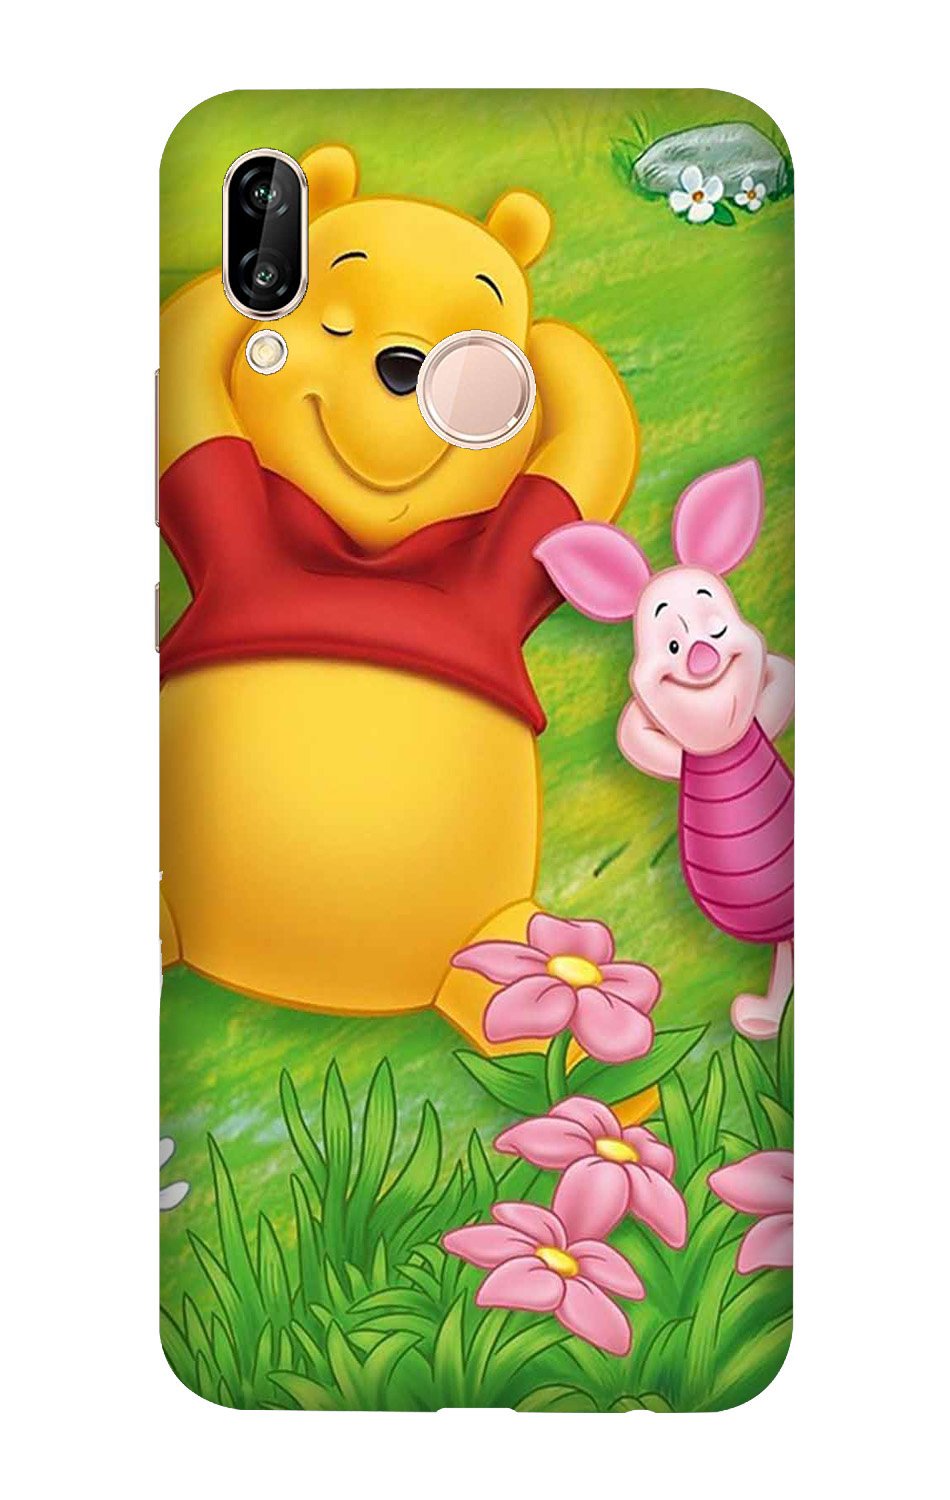 Winnie The Pooh Mobile Back Case for Vivo V9/Y85 (Design - 348)